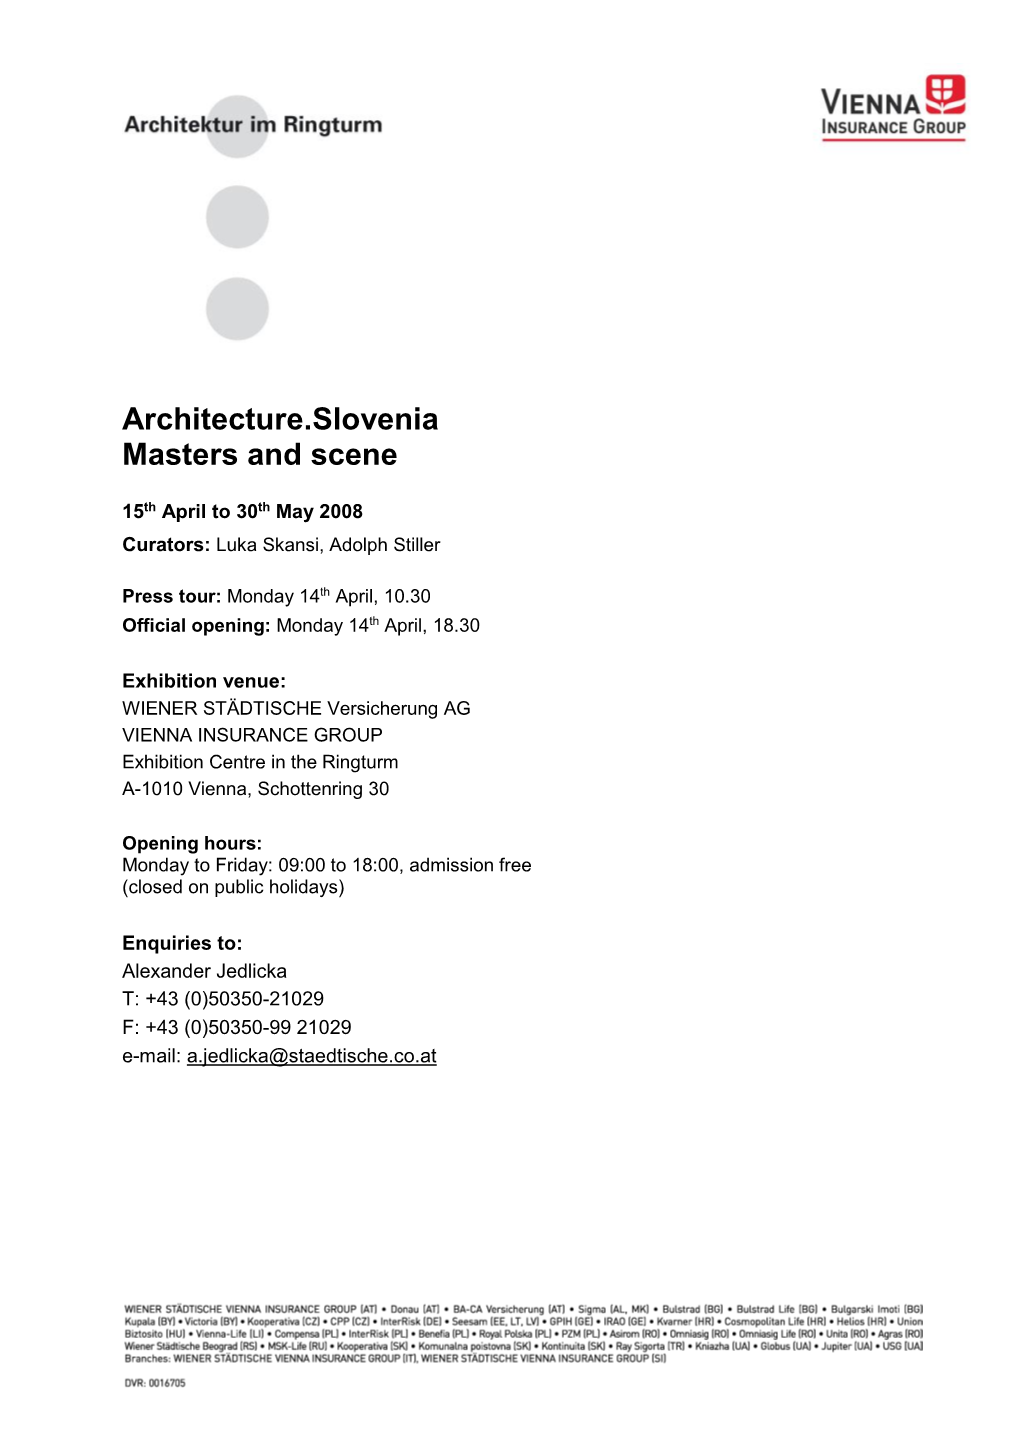 Architecture.Slovenia – Masters and Scene